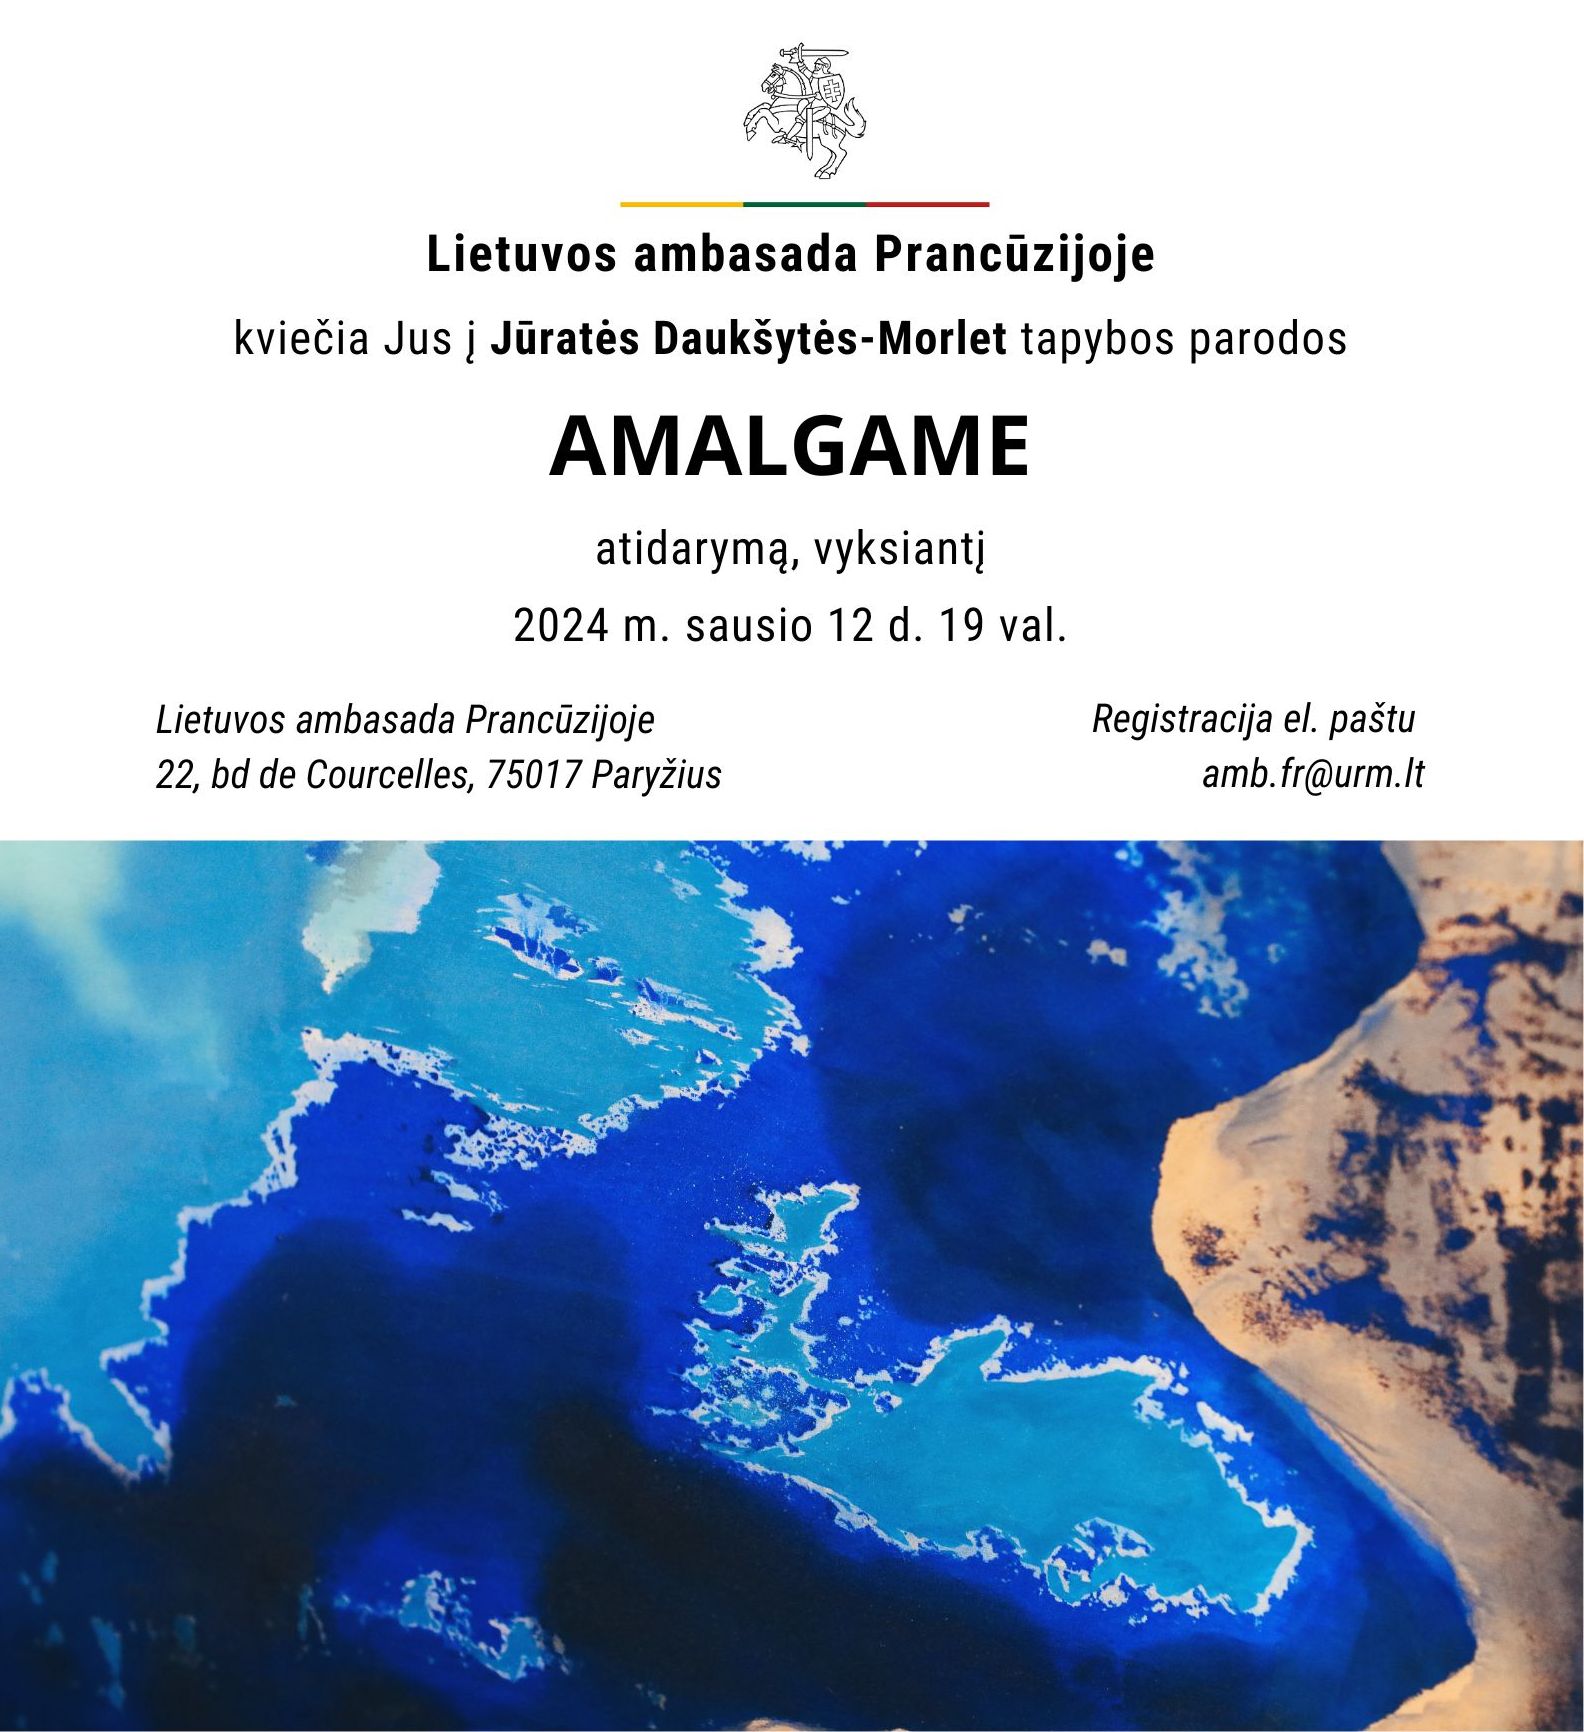 Invitation au vernissage de l’exposition « Amalgame » de Jūratė Daukšytė-Morlet